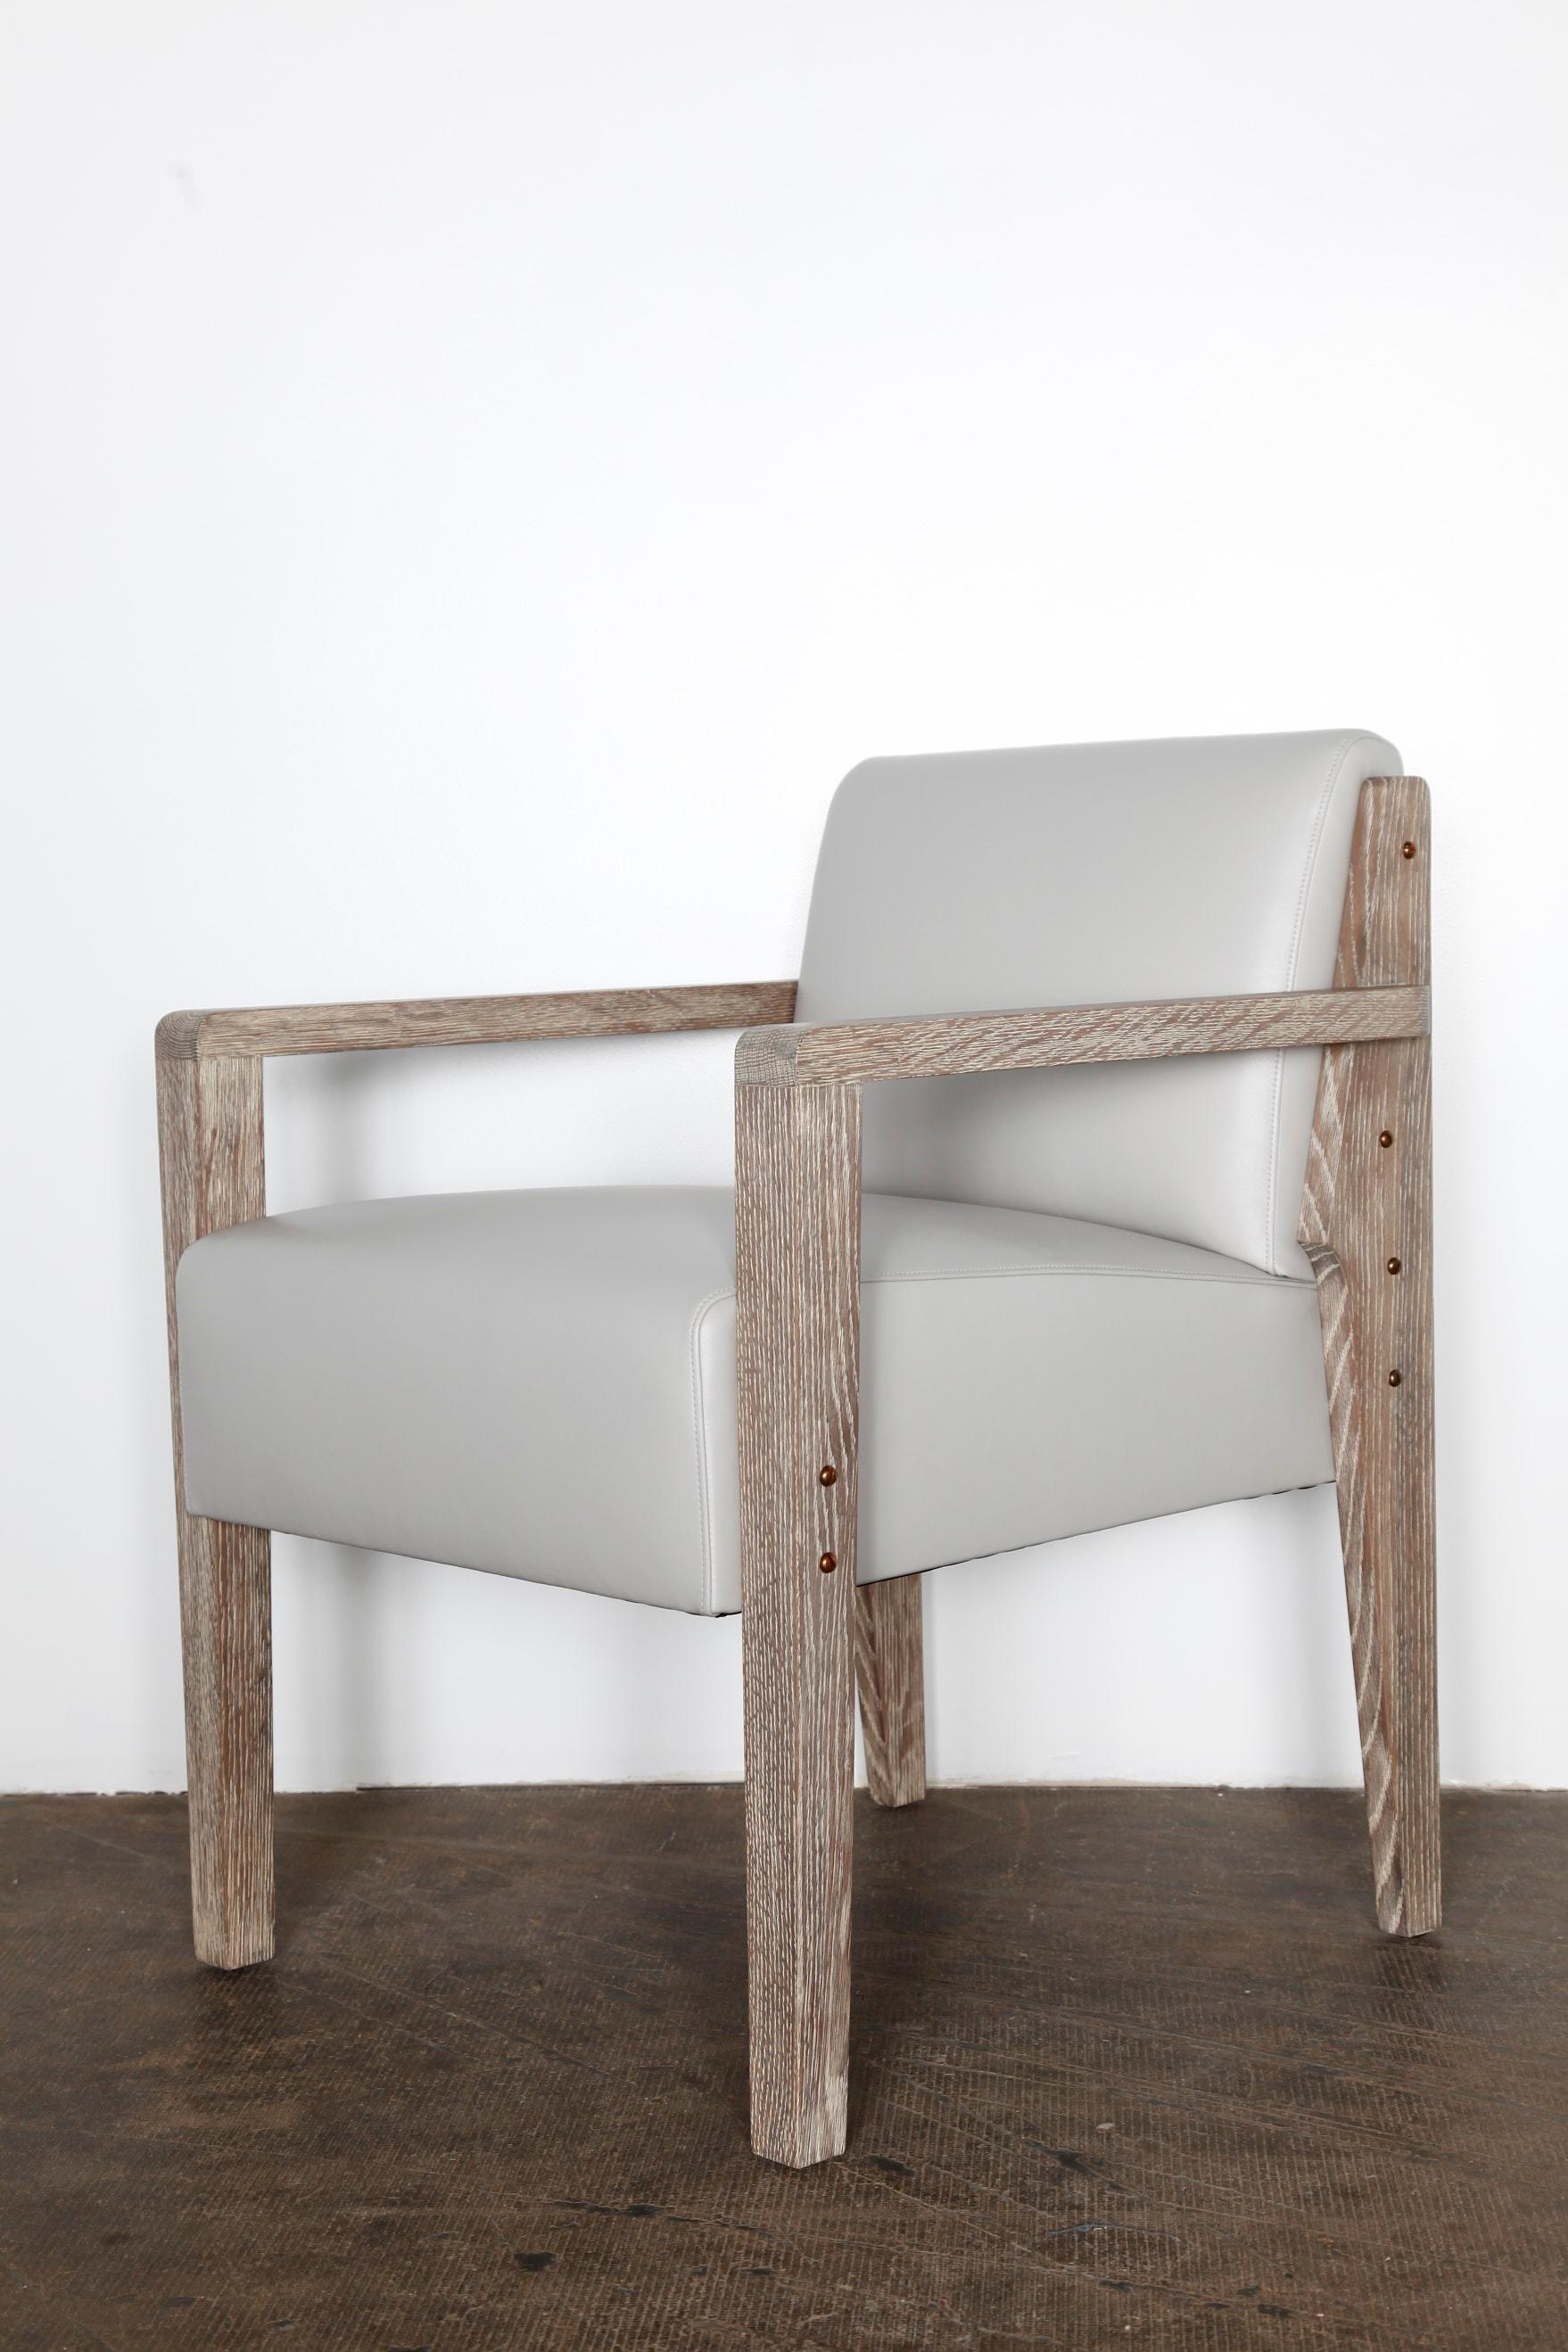 Inspirée d'un modèle de Dupre Lafon, notre chaise de bureau Art Deco personnalisée est élégante, moderne, classique et intemporelle.

Ce modèle de chaise est généralement utilisé comme chaise de bureau, mais il peut aussi très bien faire office de